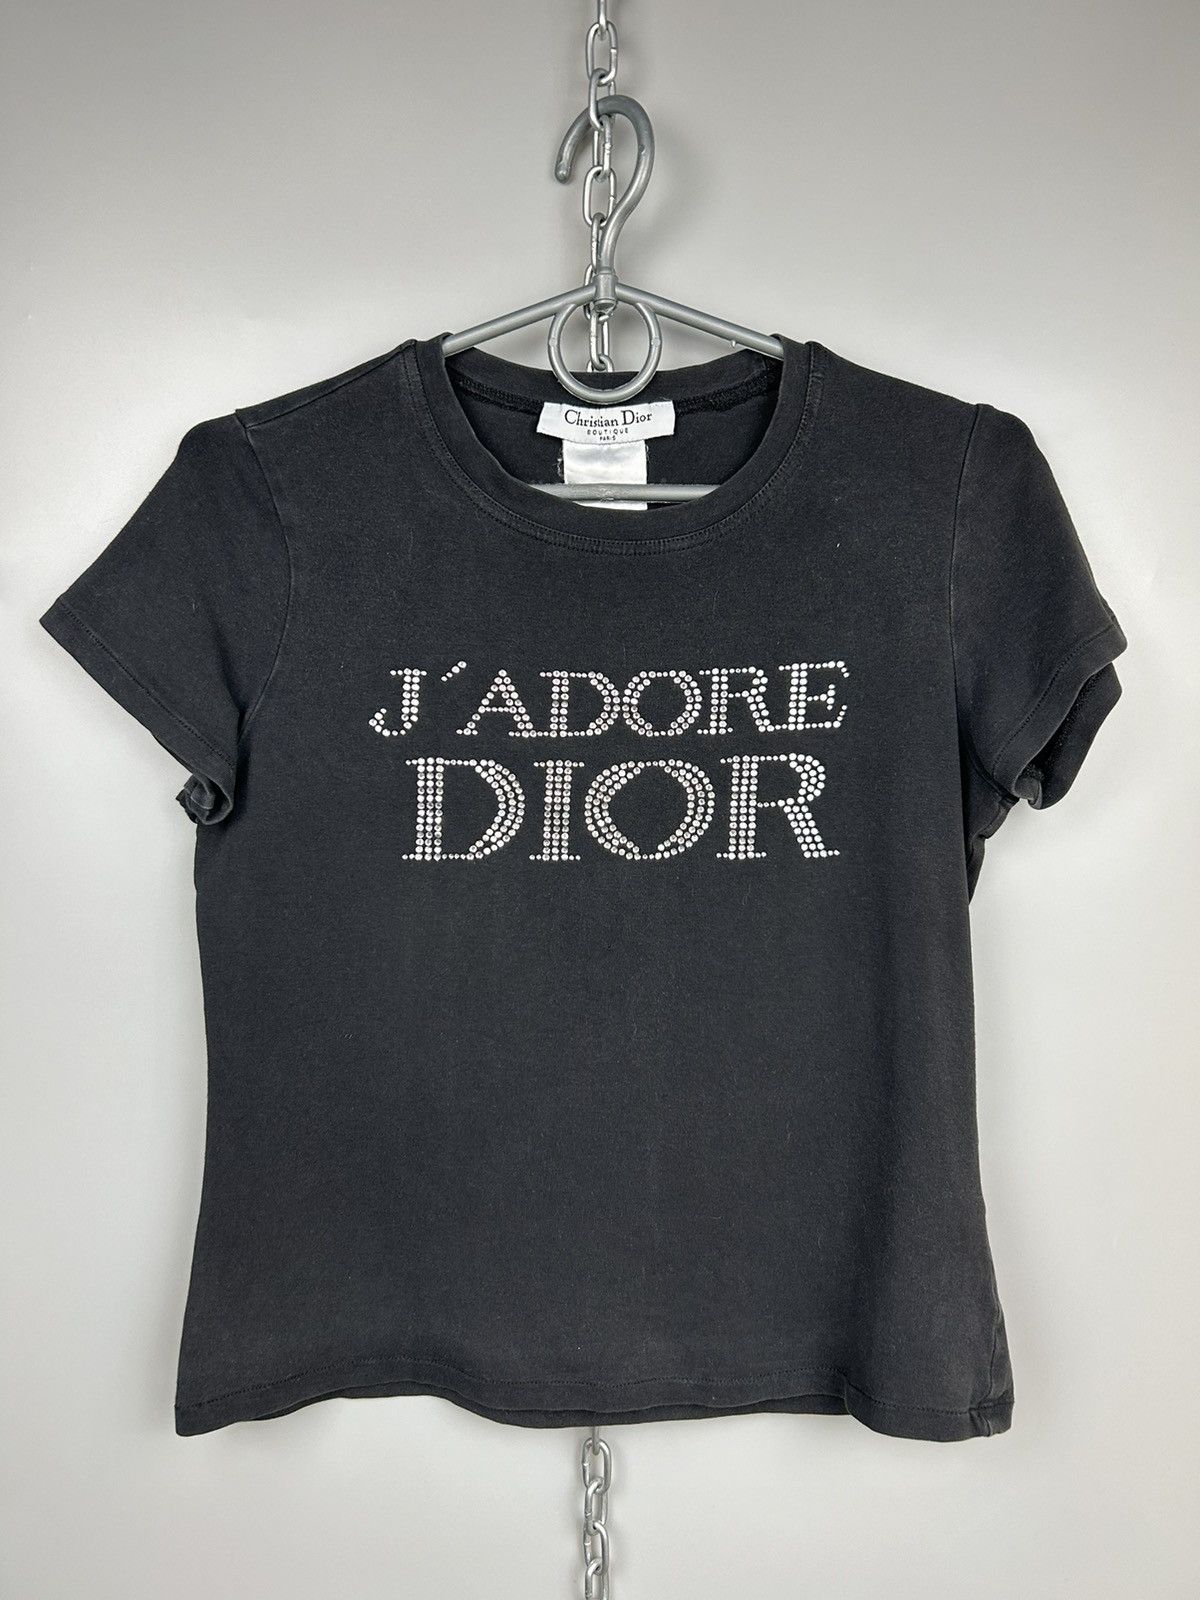 Dior J'ADORE DIOR BY CHRISTIAN DIOR SWAROVSKI LOGO T SHIRT | Grailed